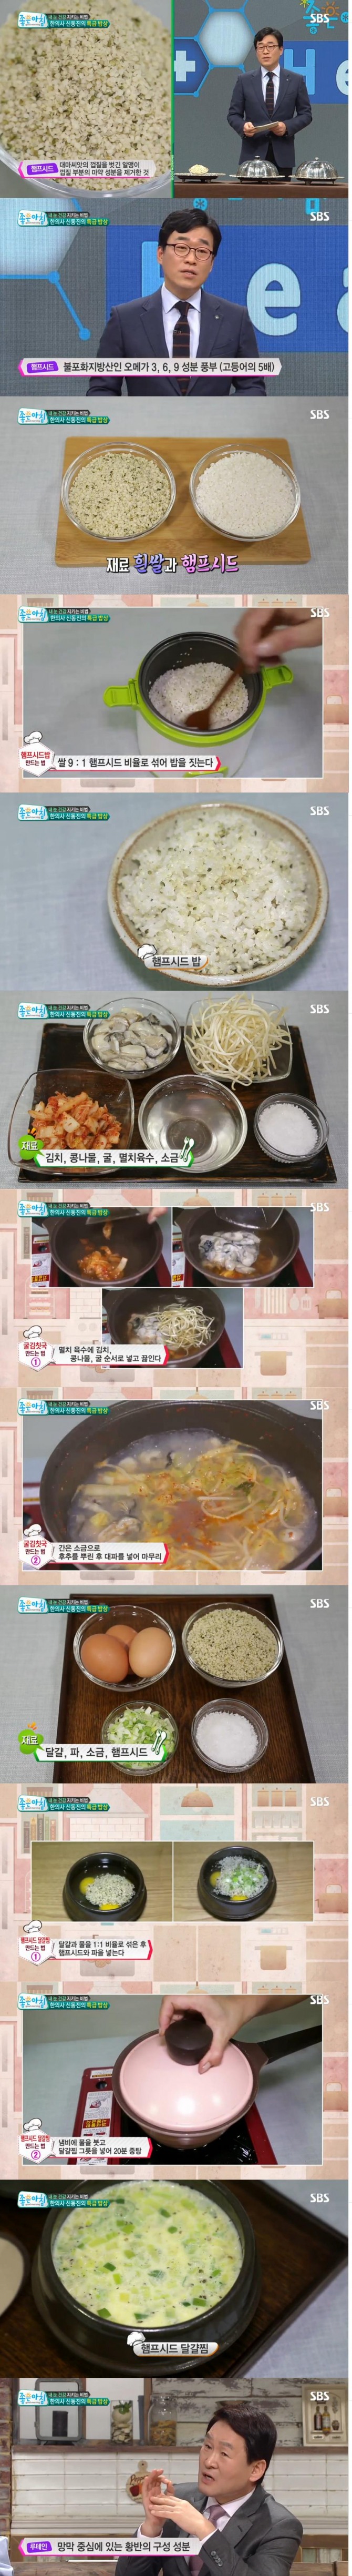 12일 방송된 SBS '좋은 아침'에서는 눈 건강에 좋은 특급 밥상으로 햄프씨드밥, 굴김칫국, 햄프씨드달걀찜 레시피가 소개됐다./사진=SBS 방송 캡처